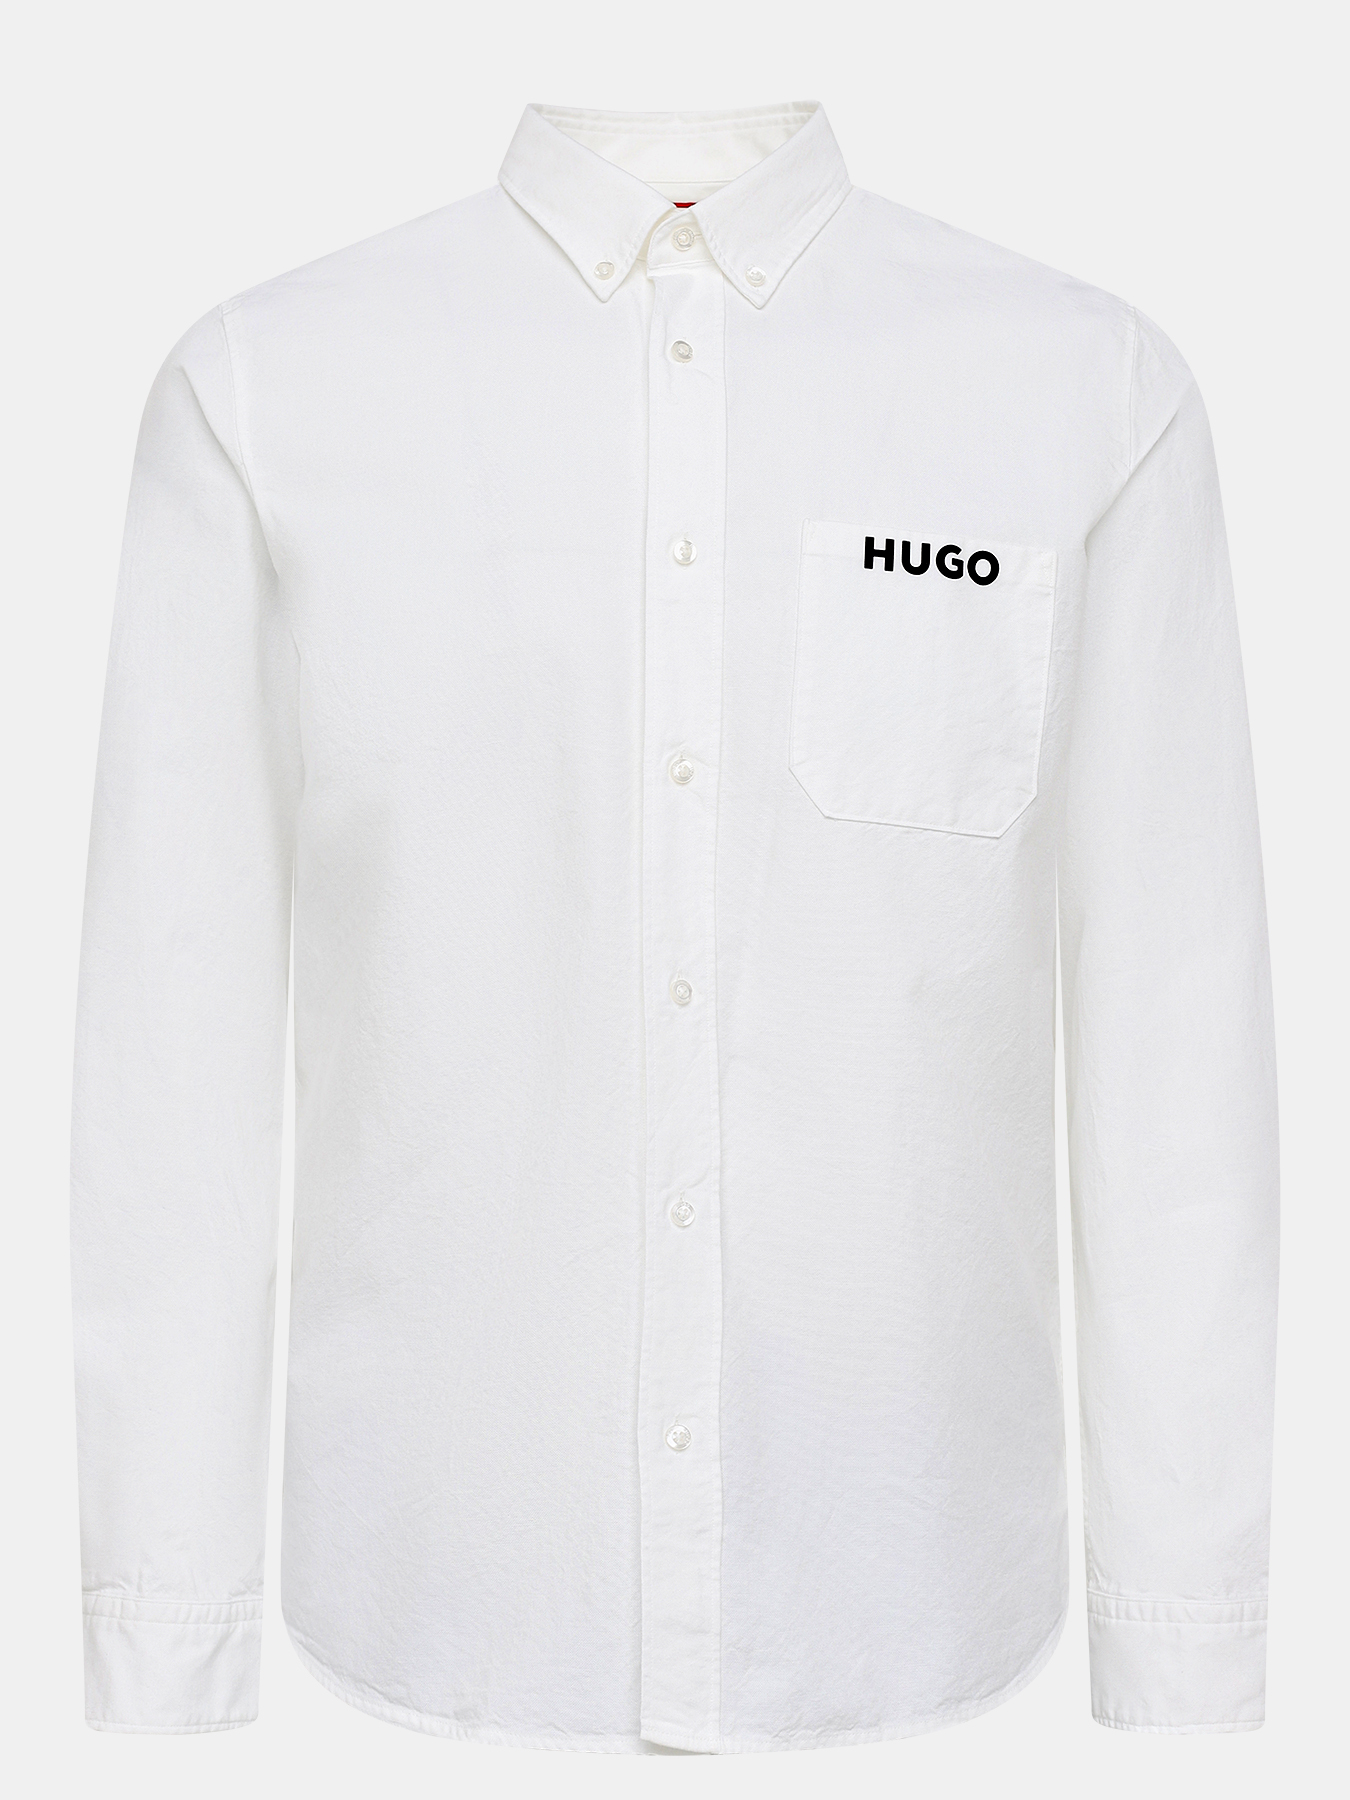 Рубашка Hugo. Сорочка Hugo. Рубашки Хуго Эрондо а-04. Hugo размеры